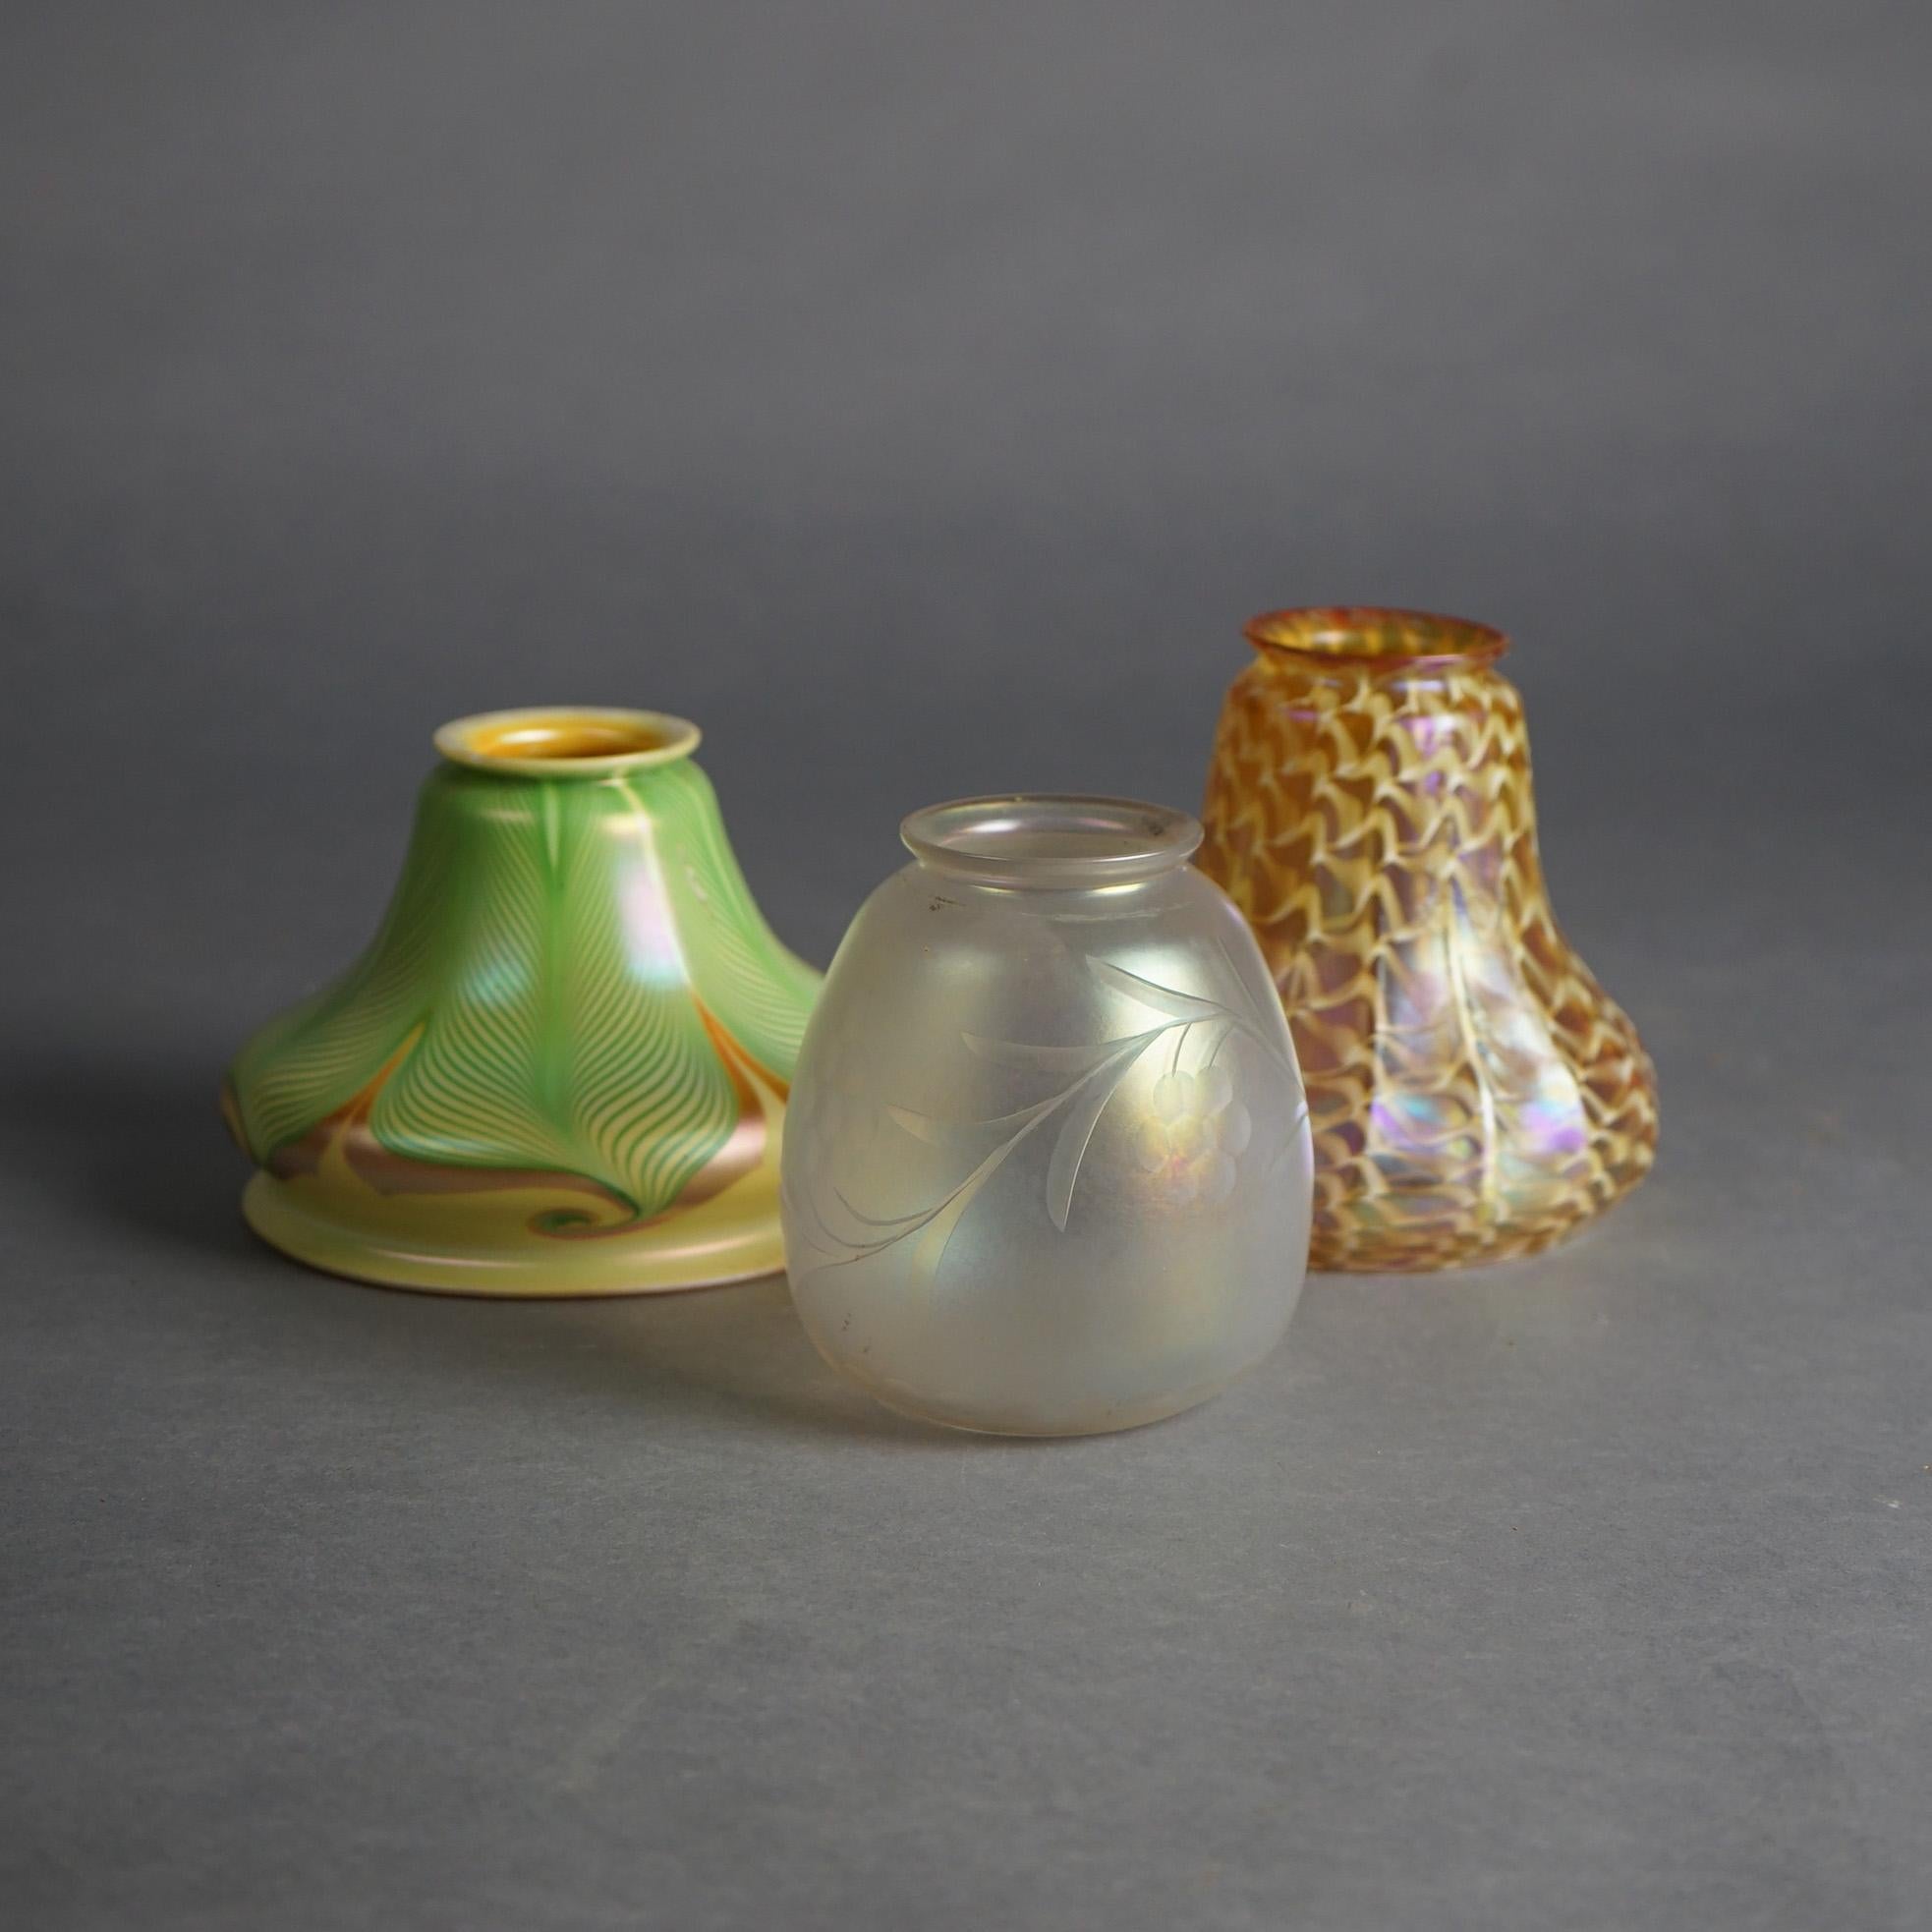 American Three Arts & Crafts Steuben & Quezal Art Glass Shades C1920